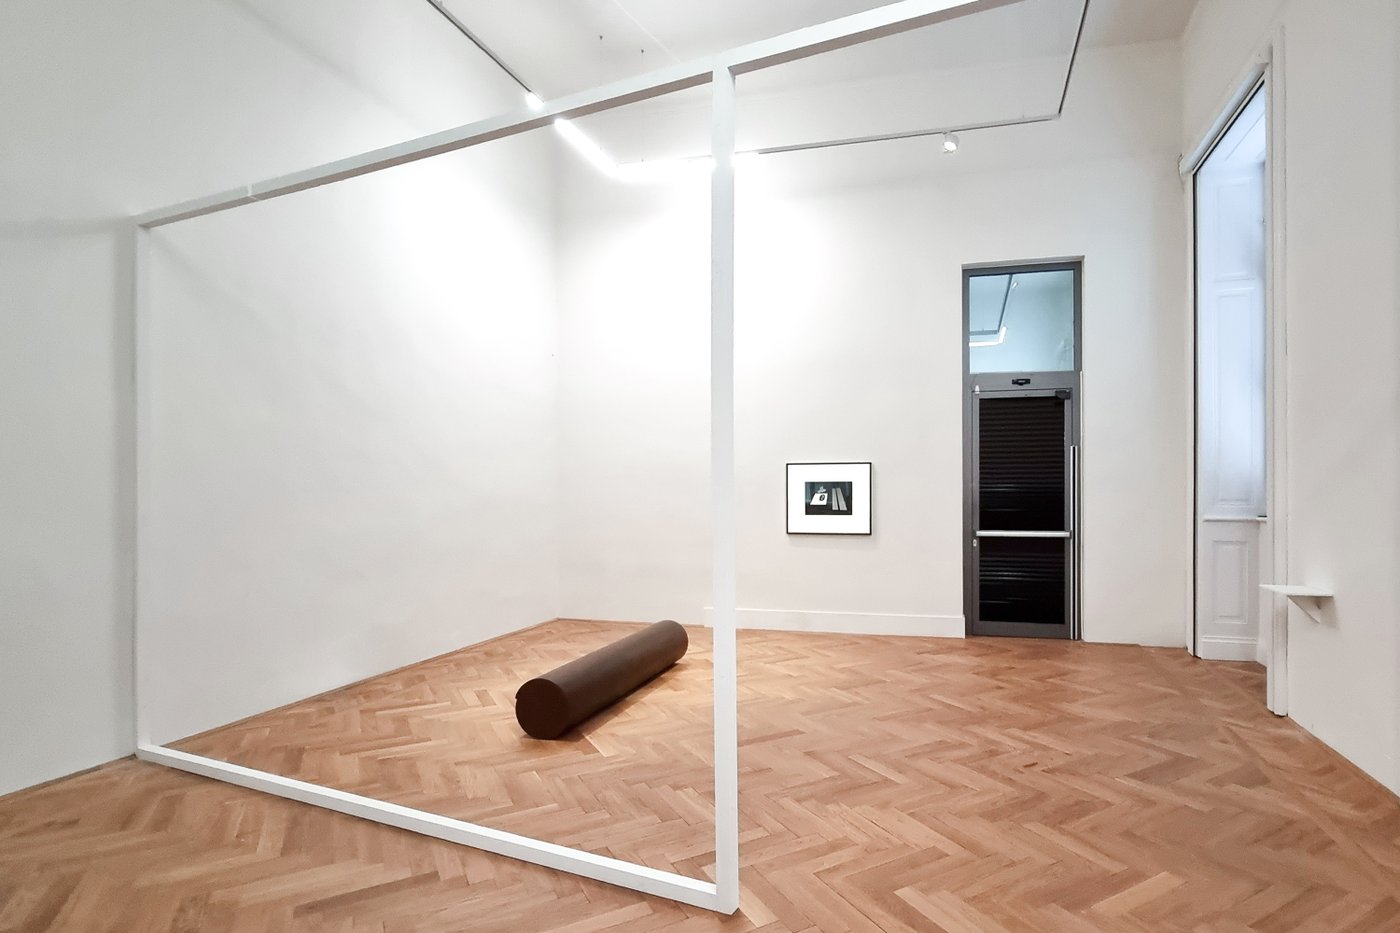 Ausstellungsansicht eines Raumes mit einem weißen Gestell, eine braune Holzrolle am Boden, im Hintergrund ein schwarz-weißes Bild an der Wand und eine geschlossene Türe